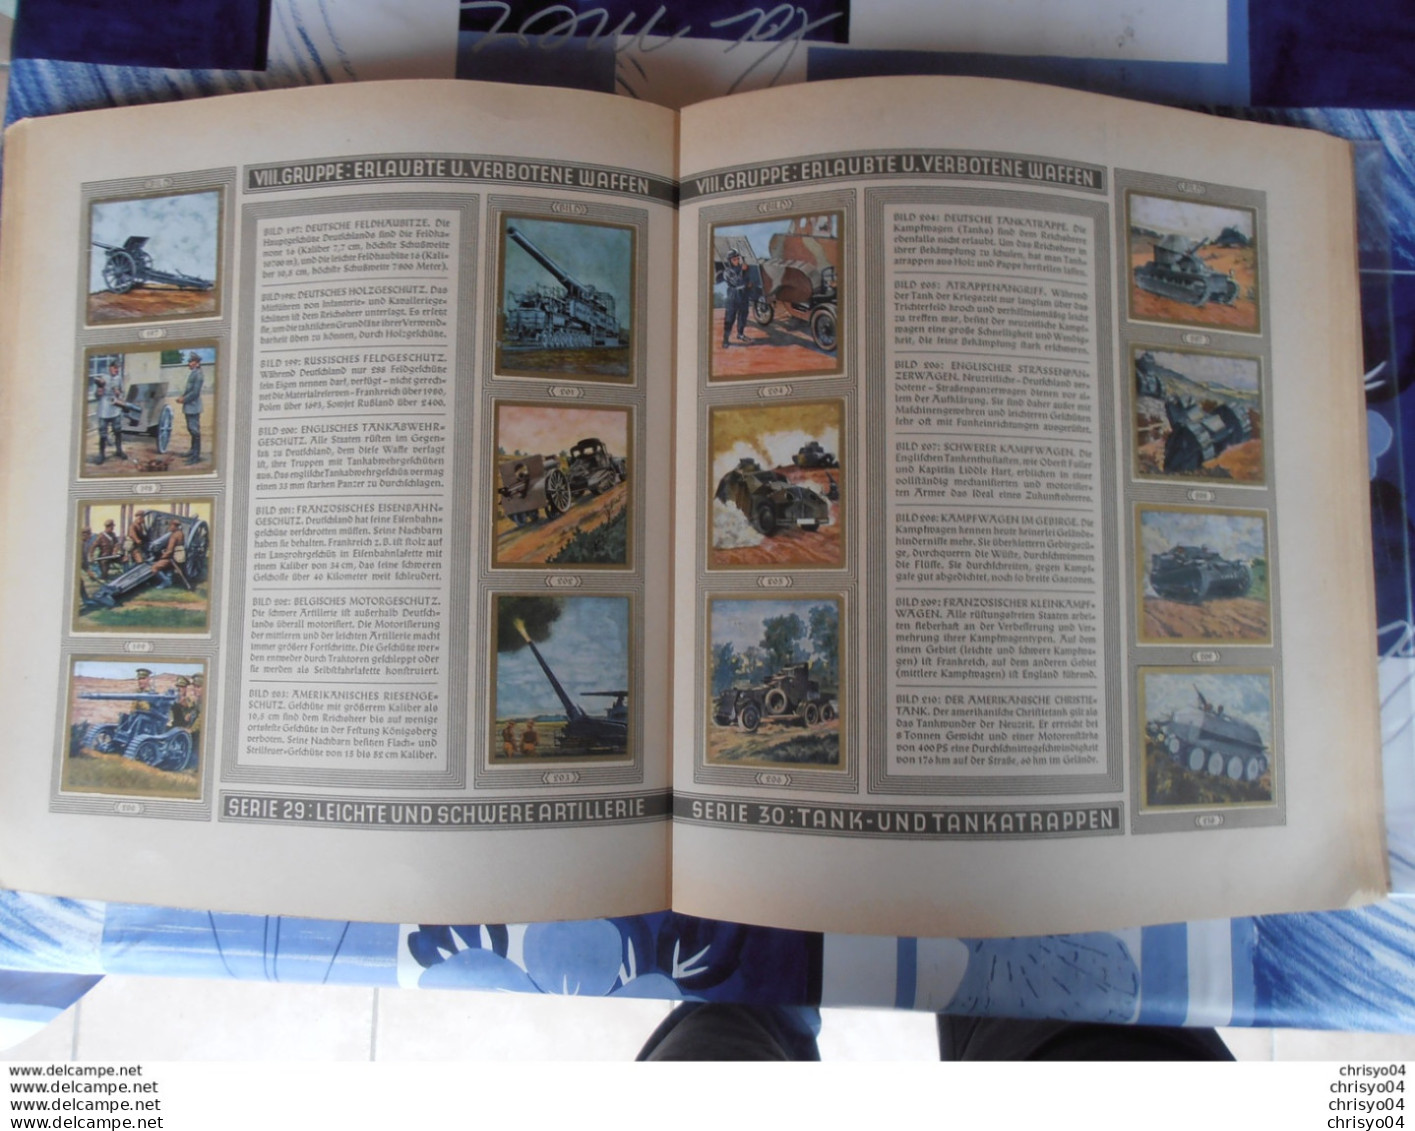 73Ccr Grand rare album complet de 280 vignettes cigarettes armée allemande 1933 Die Reichswehr militaria